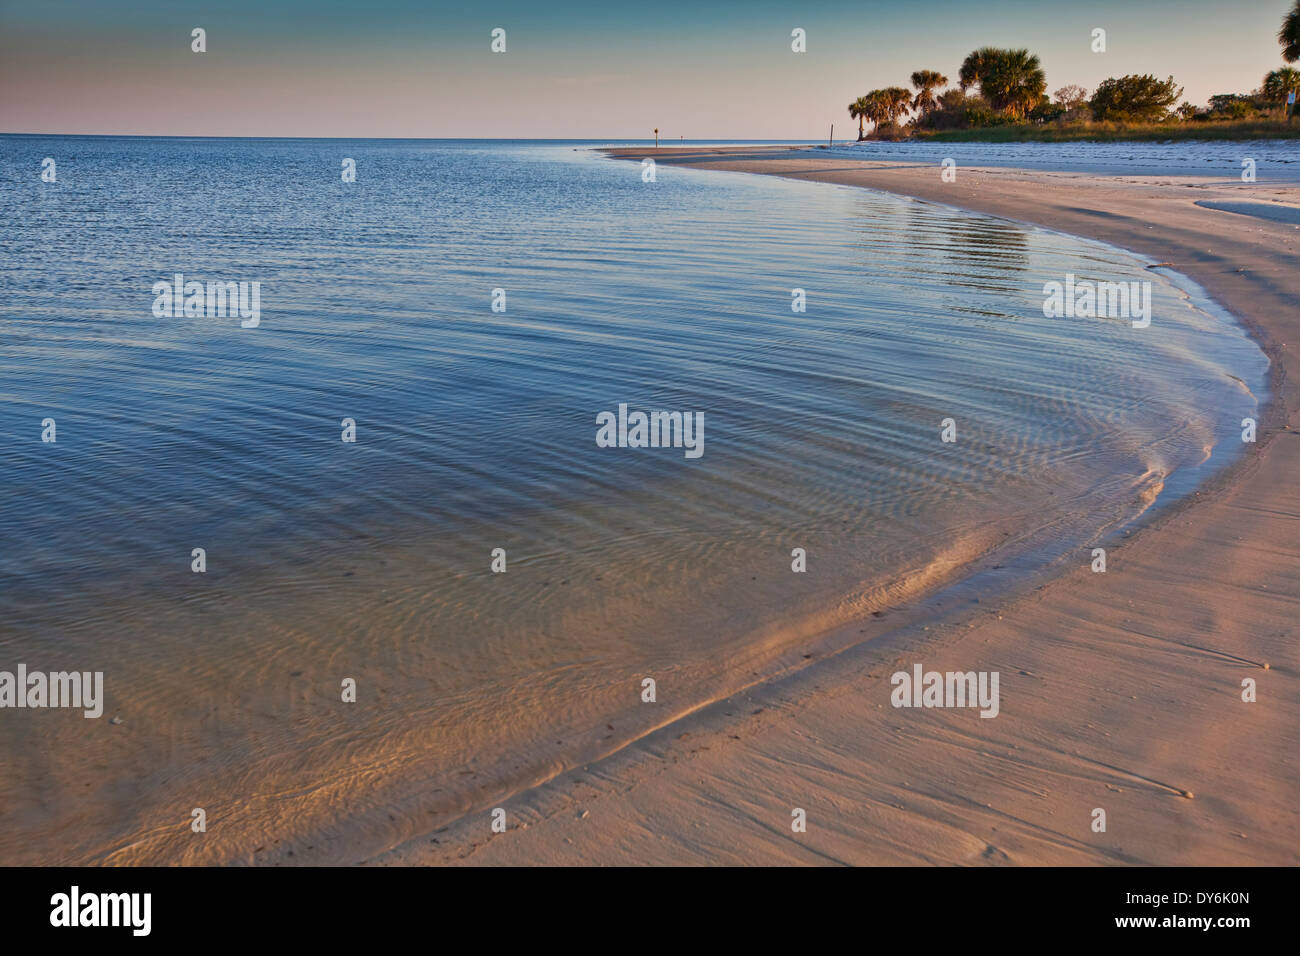 Gekrümmte Abschnitt des Strandes entlang einer geschützten Bucht am Golf von Mexiko mit späten Nachmittagssonne verlassen ein sanftes Leuchten auf dem sand Stockfoto